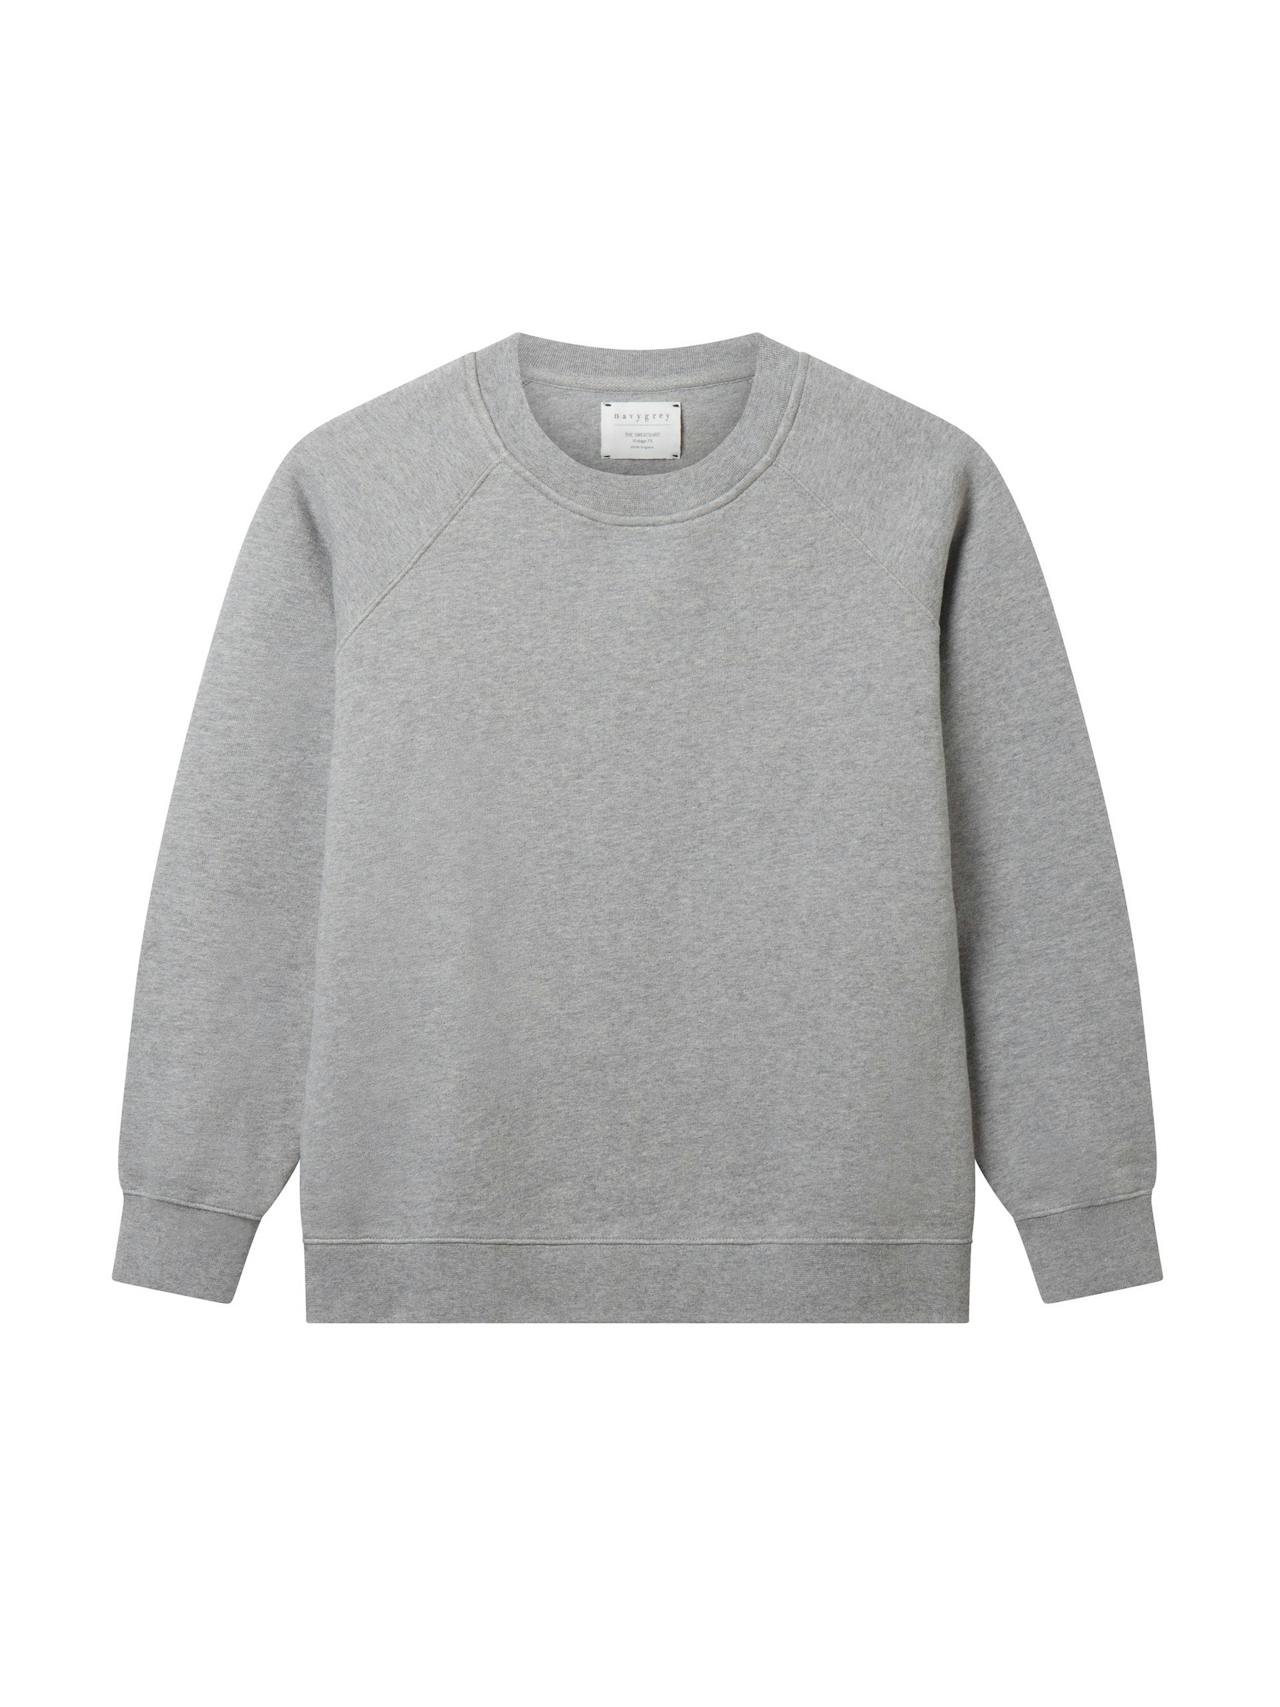 The vintage-ft sweatshirt in slate grey